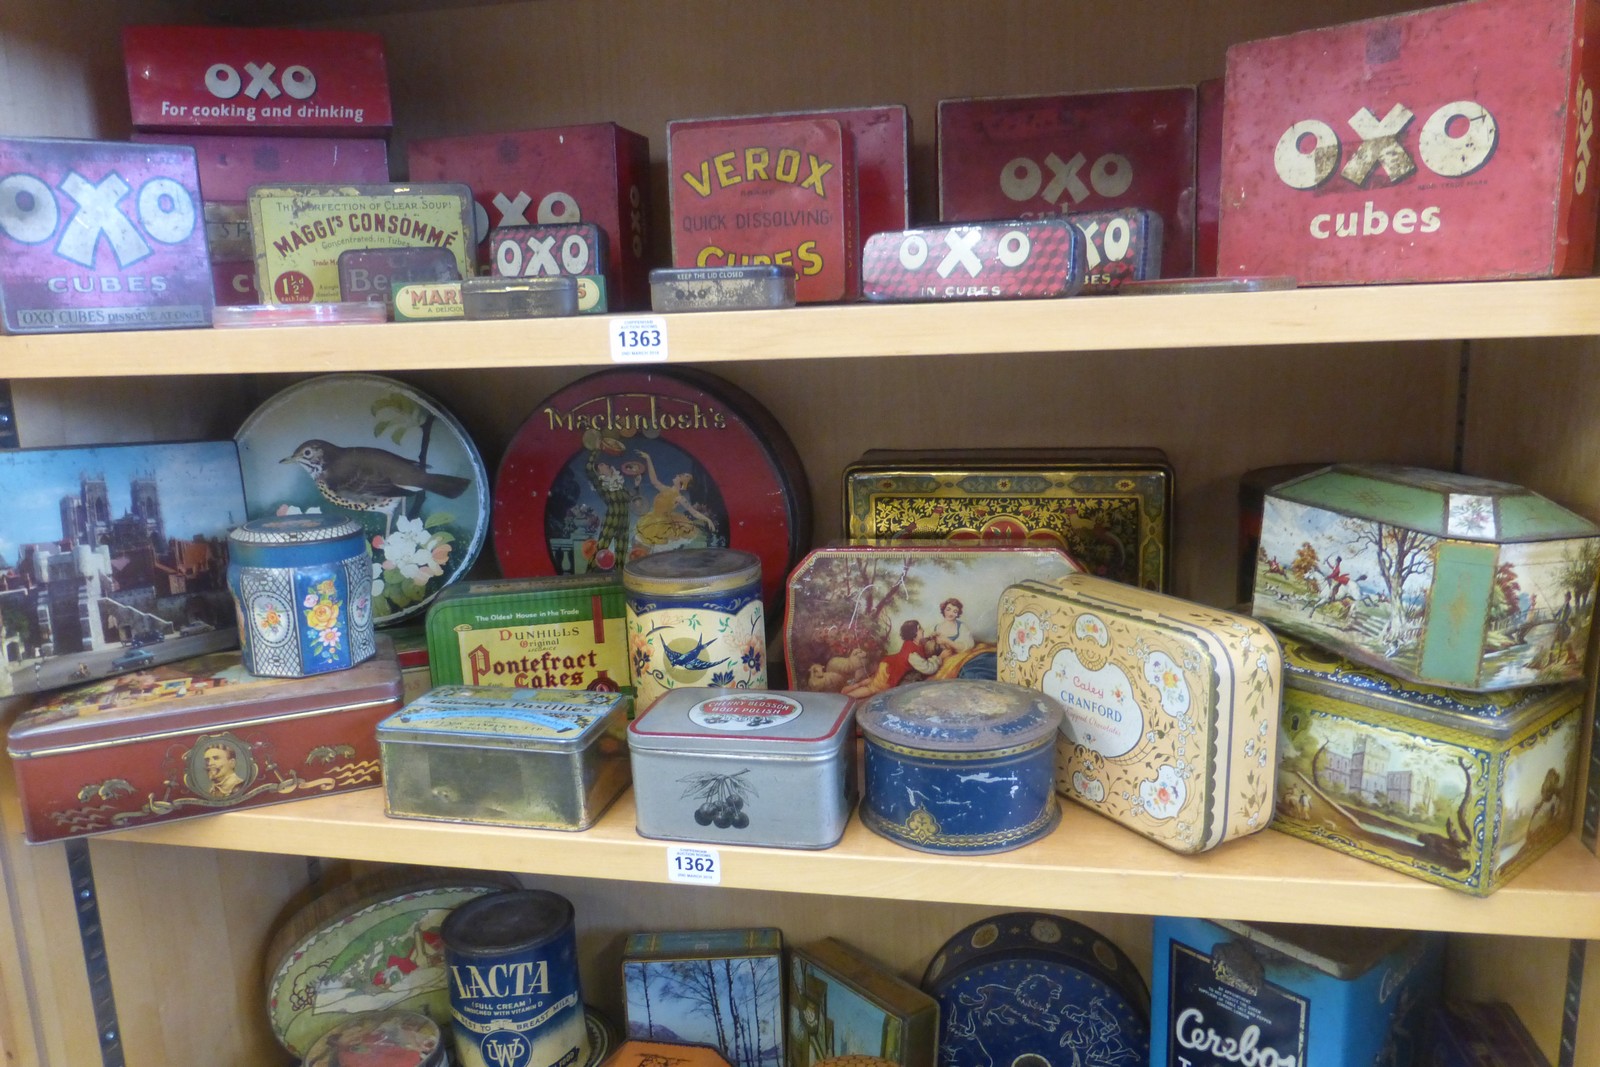 A shelf full of assorted tins including Mackintosh's.